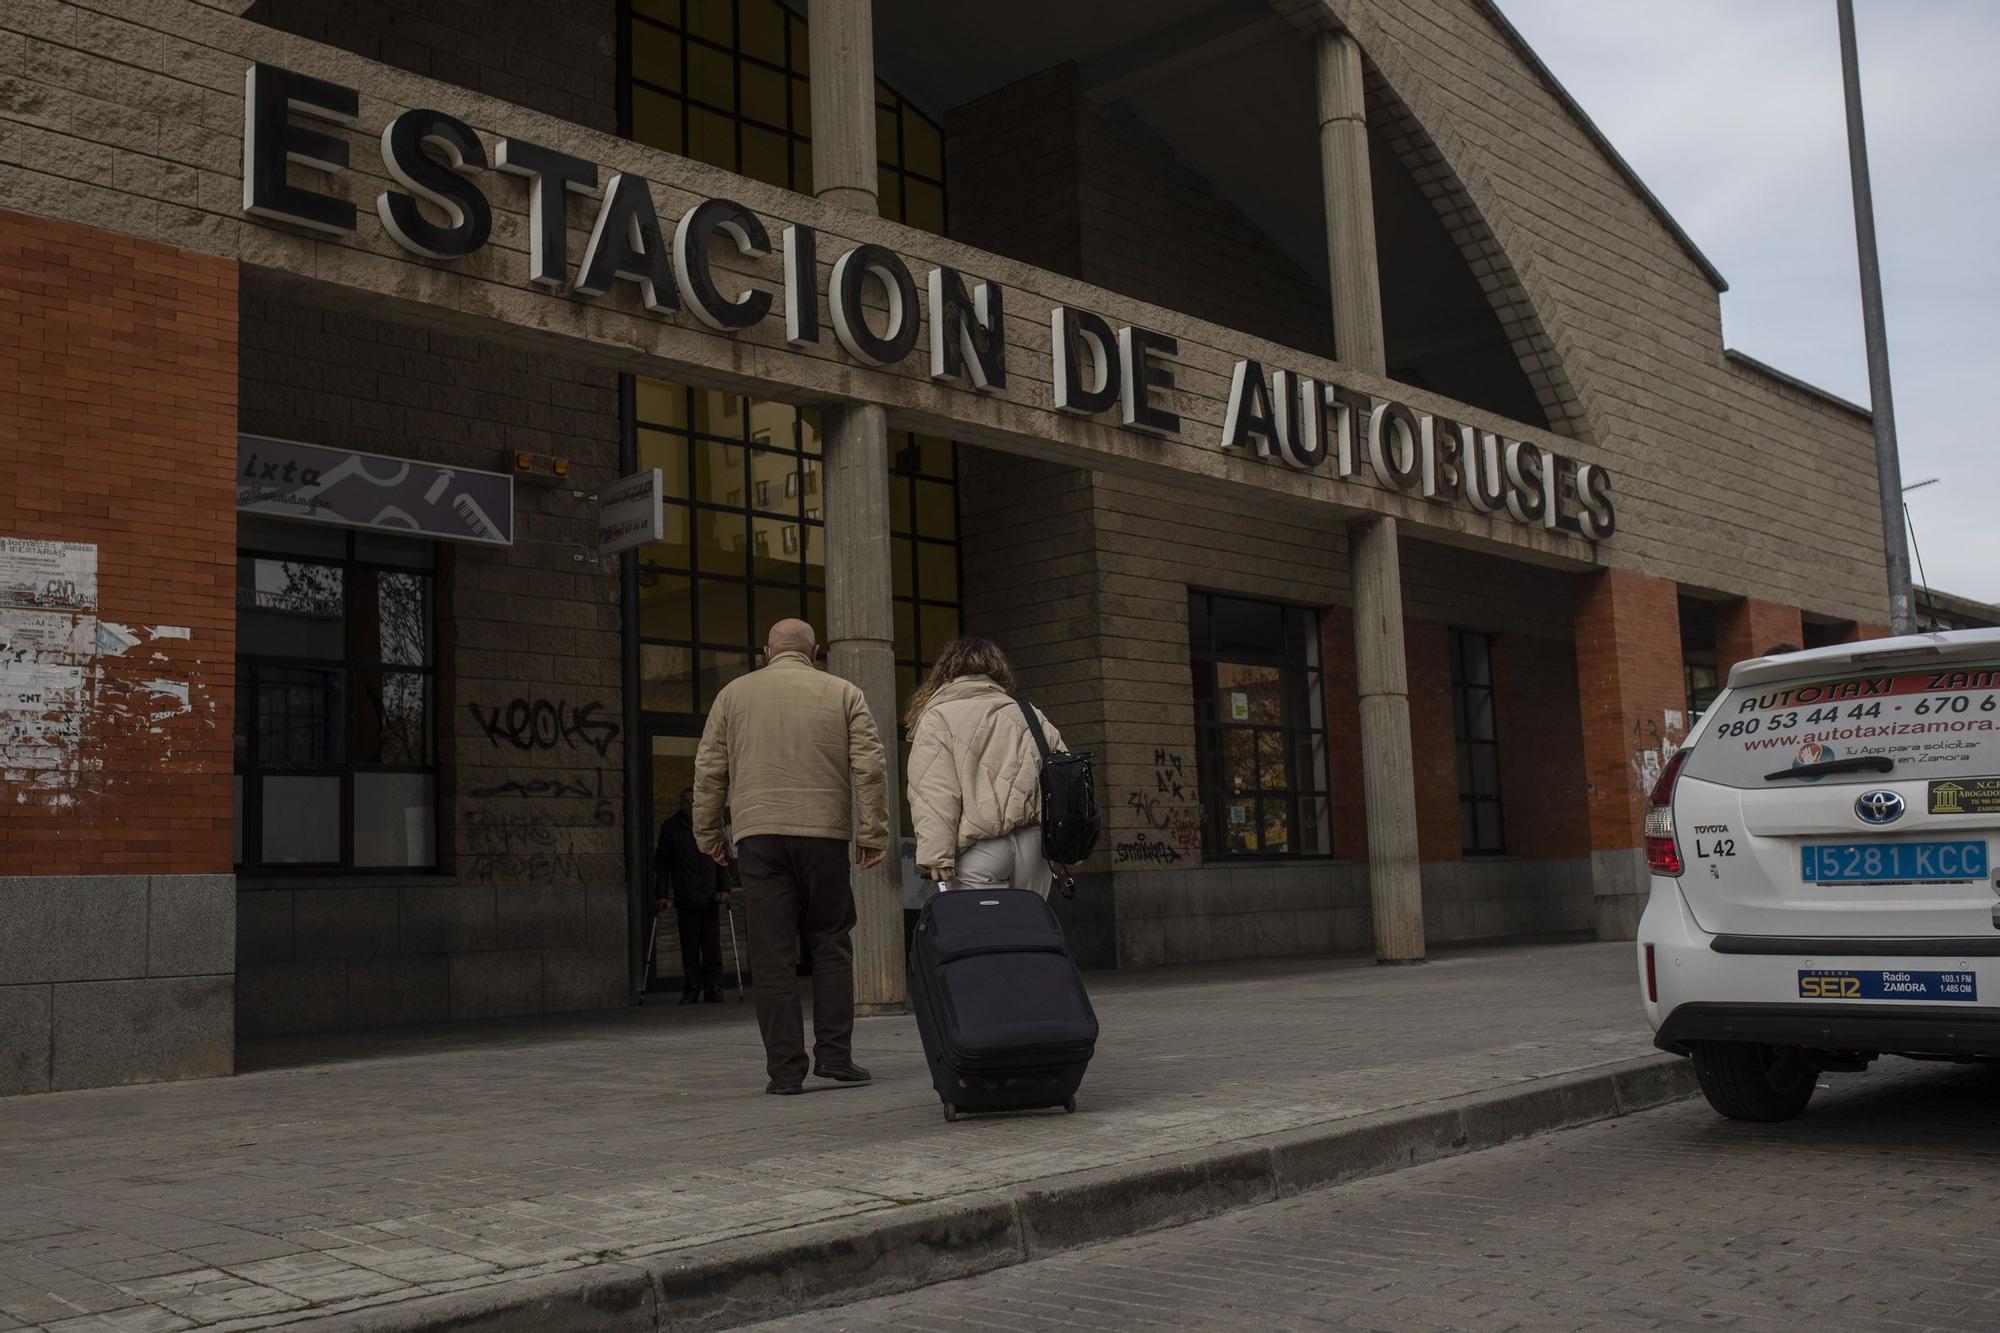 Zamora, vidas al límite | La estación de autobuses languidece sin viajeros